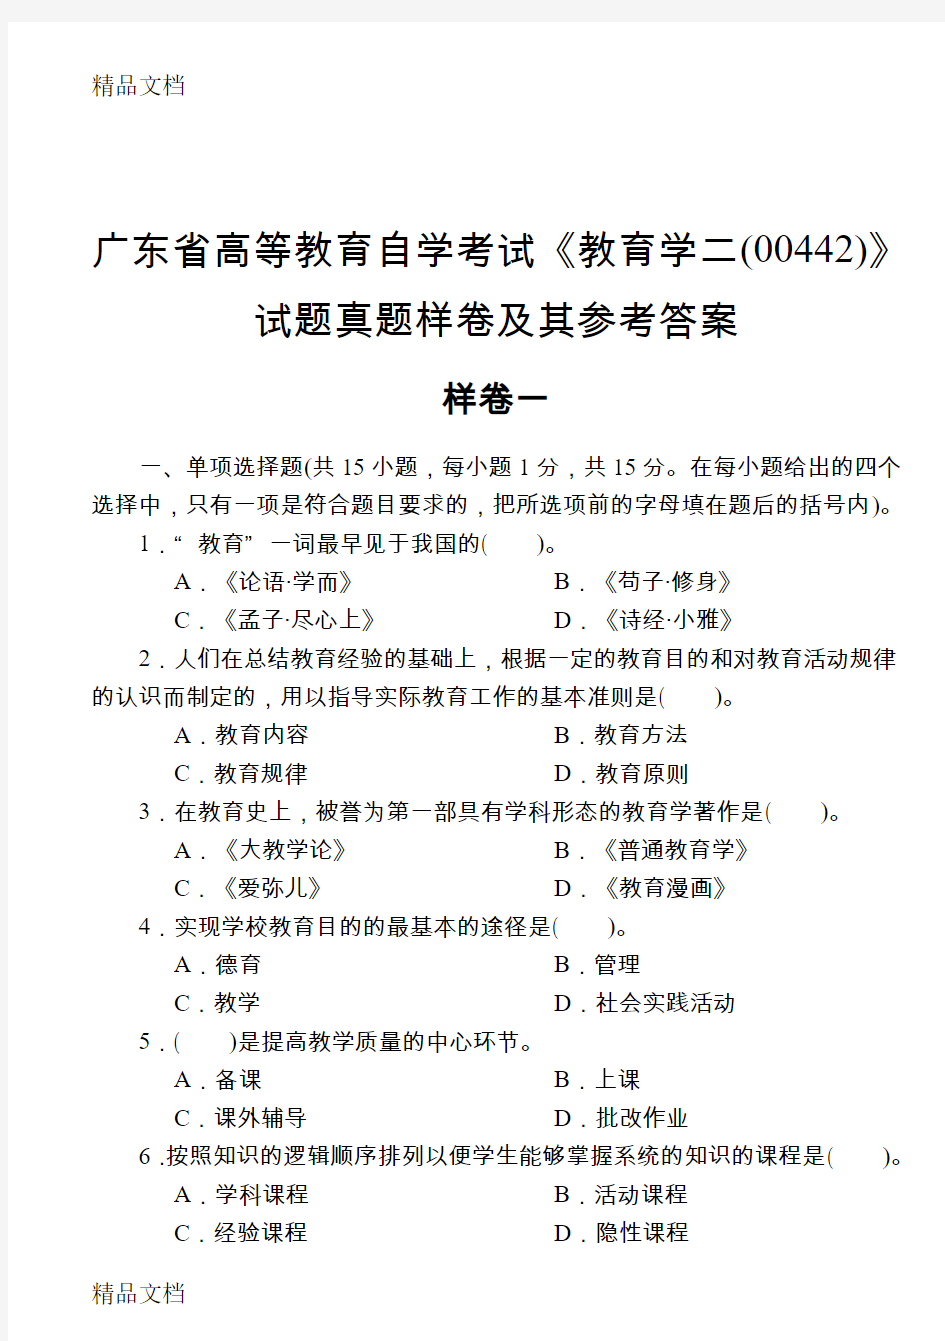 最新广东省高等教育自学考试《教育学二(00442)》真题样试卷及参考答案2套资料